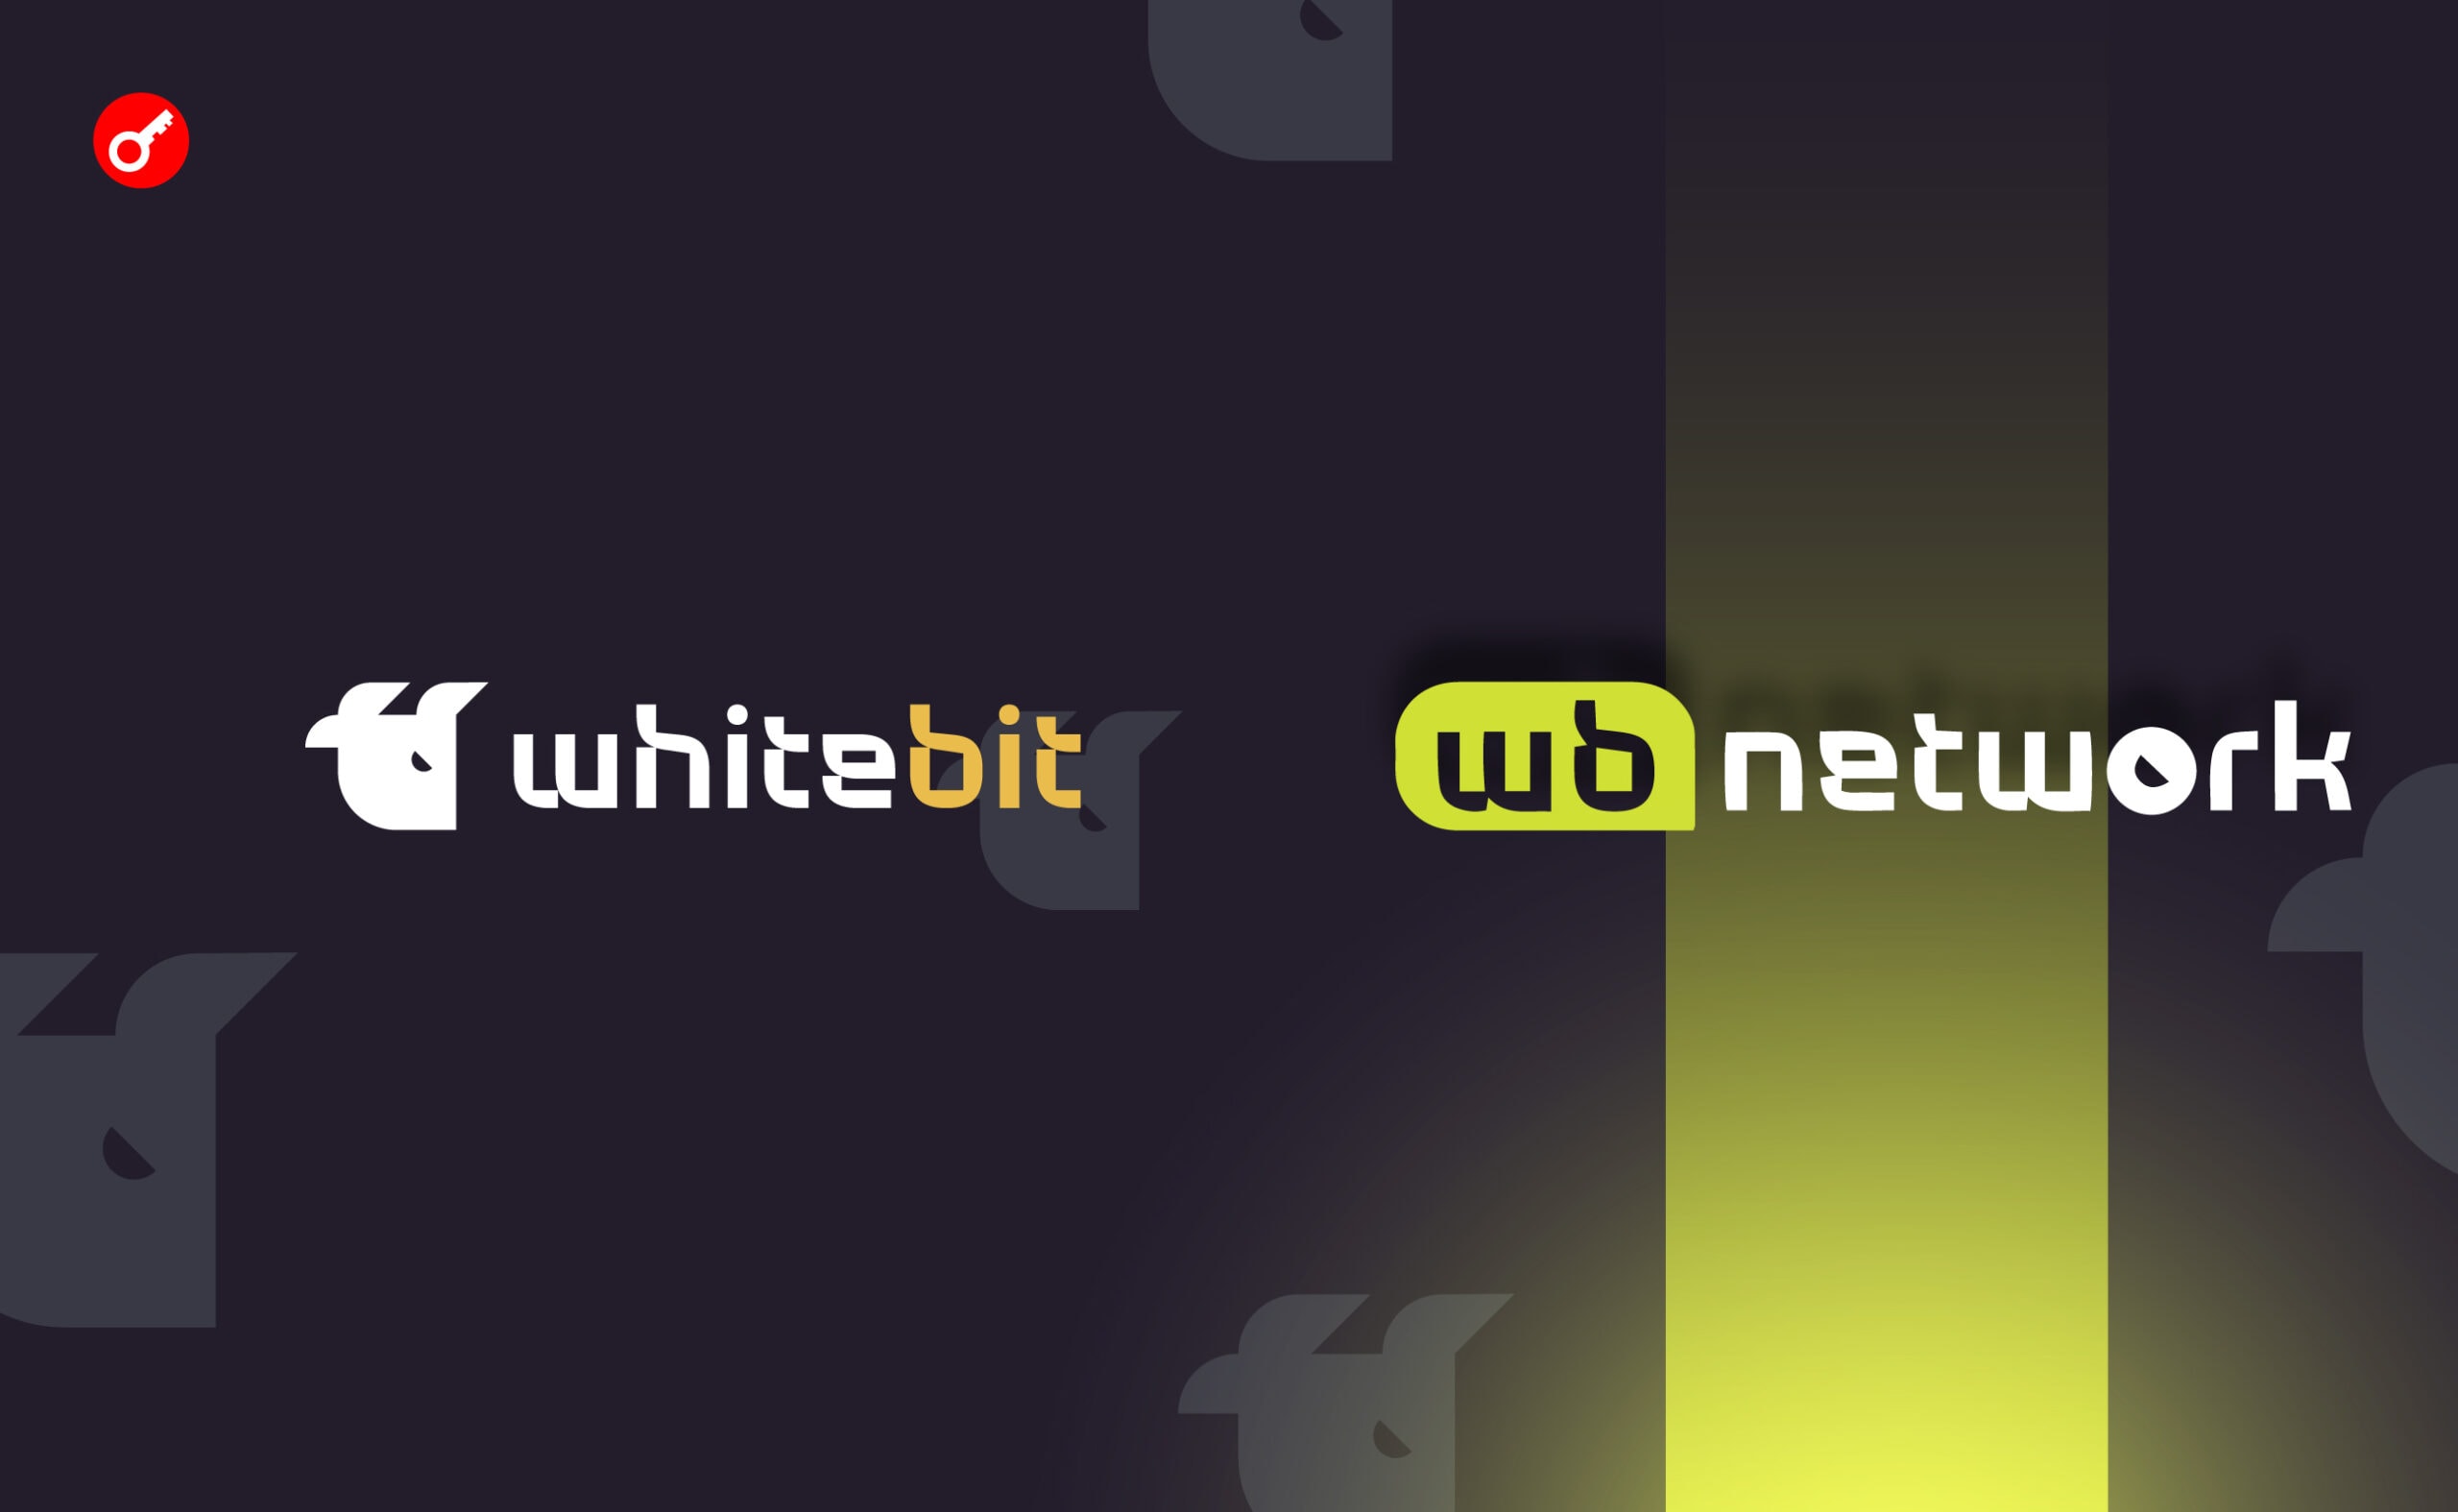 WhiteBIT ogłosił uruchomienie sieci głównej WB Network. Główny kolaż wiadomości.